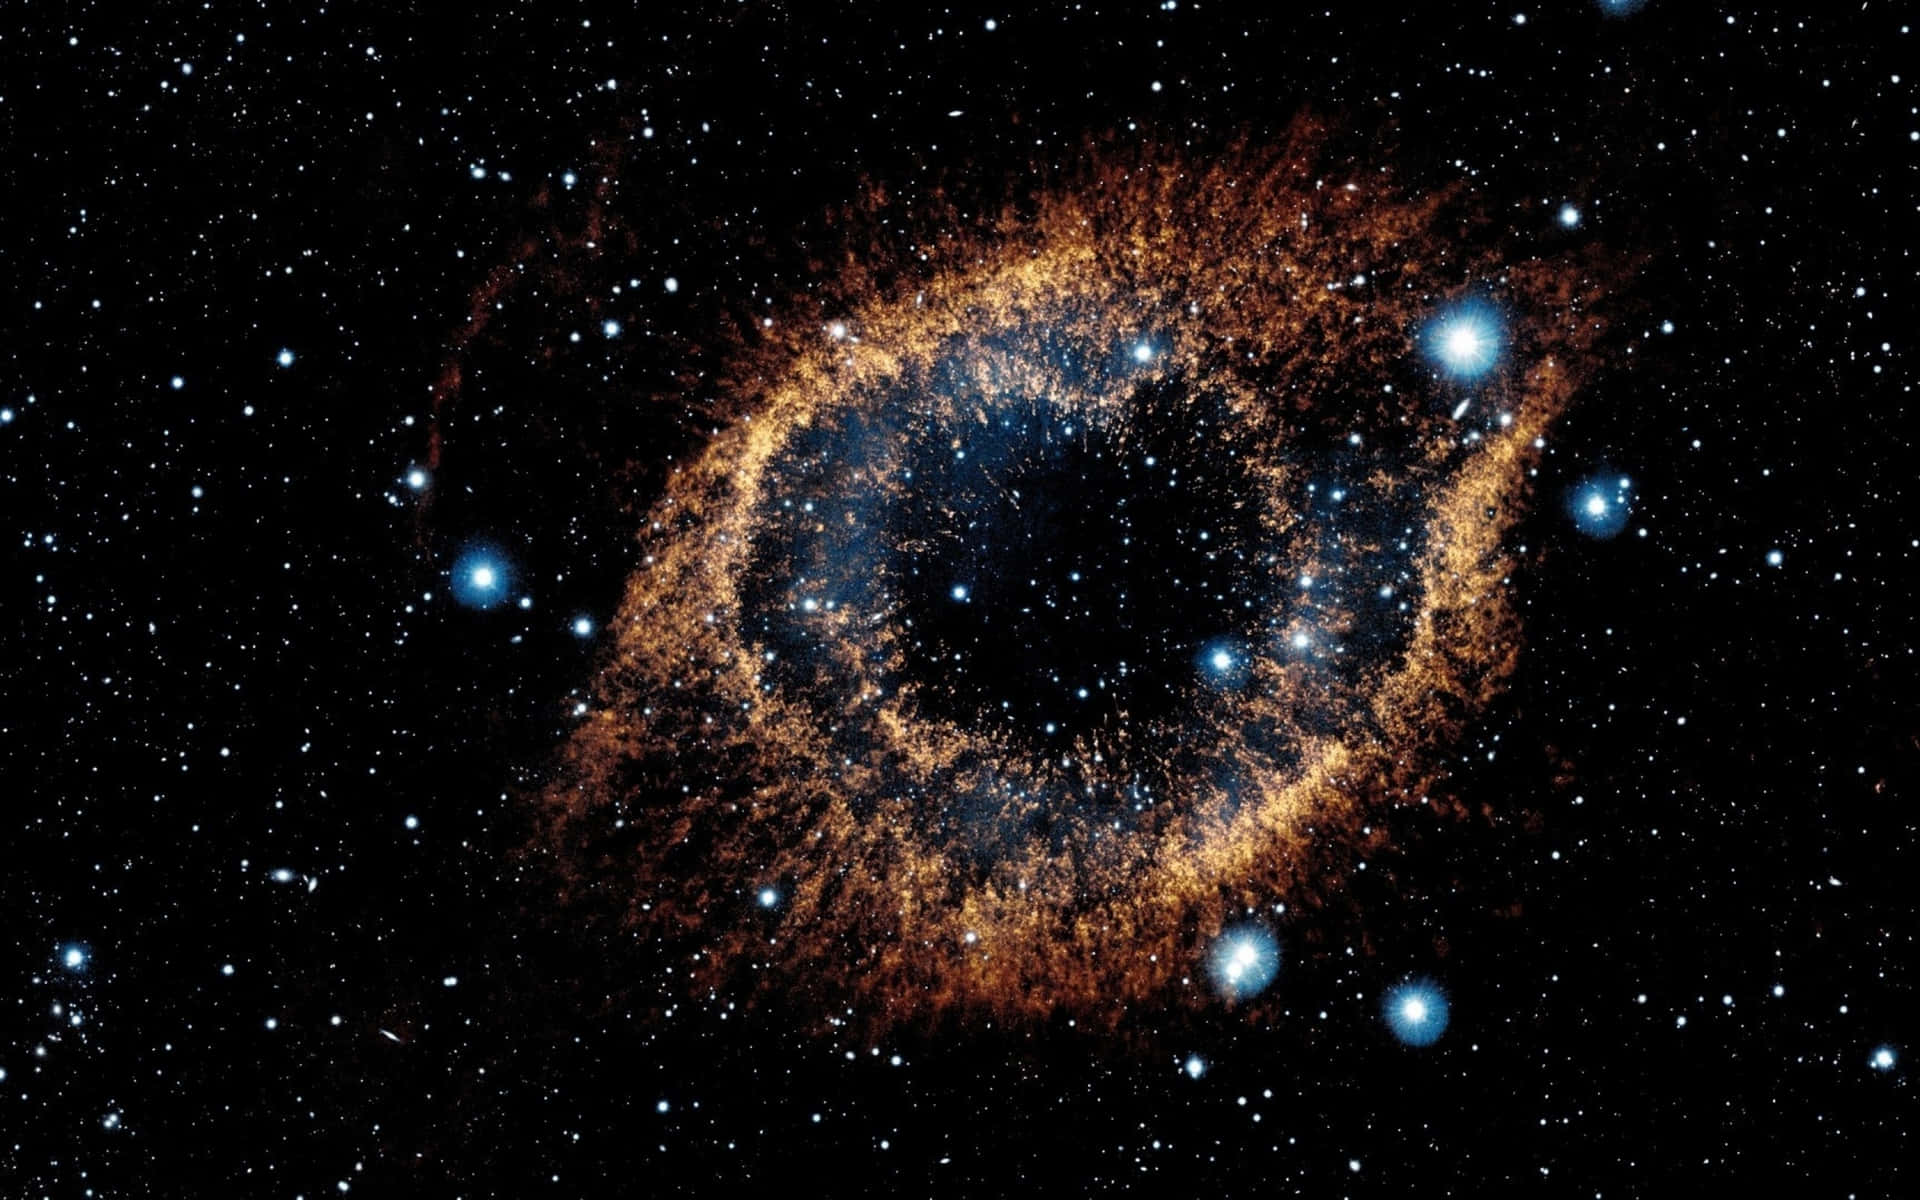 Imágenesdel Espacio Profundo De La Nasa Captadas Por El Telescopio Hubble.